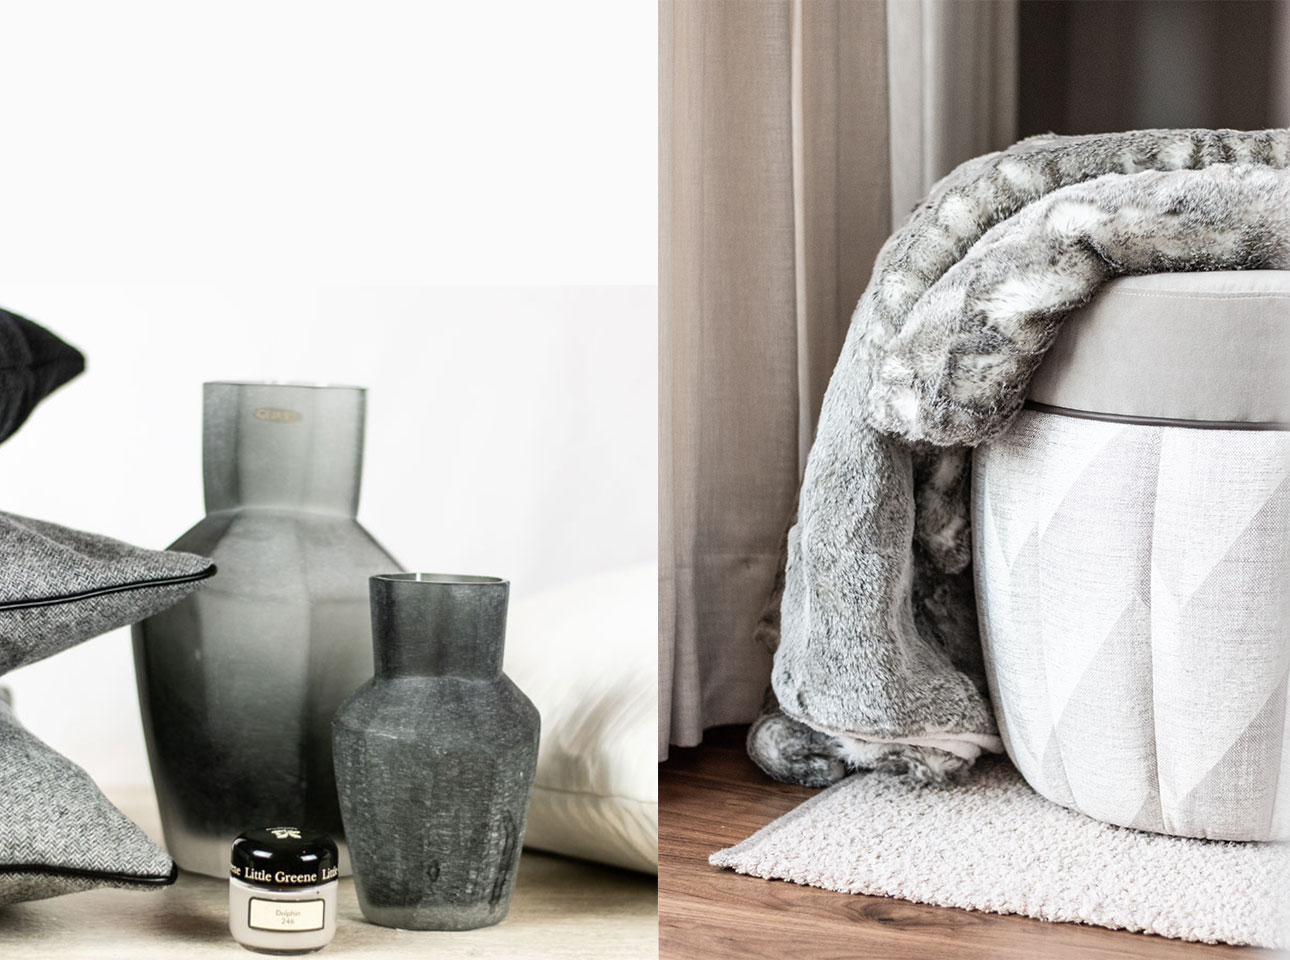 Flur gestalten mit Kissen Decken Leuchten Kerzen Duftkerzen Interior Design Inspiration Blog Vasen graue Decke